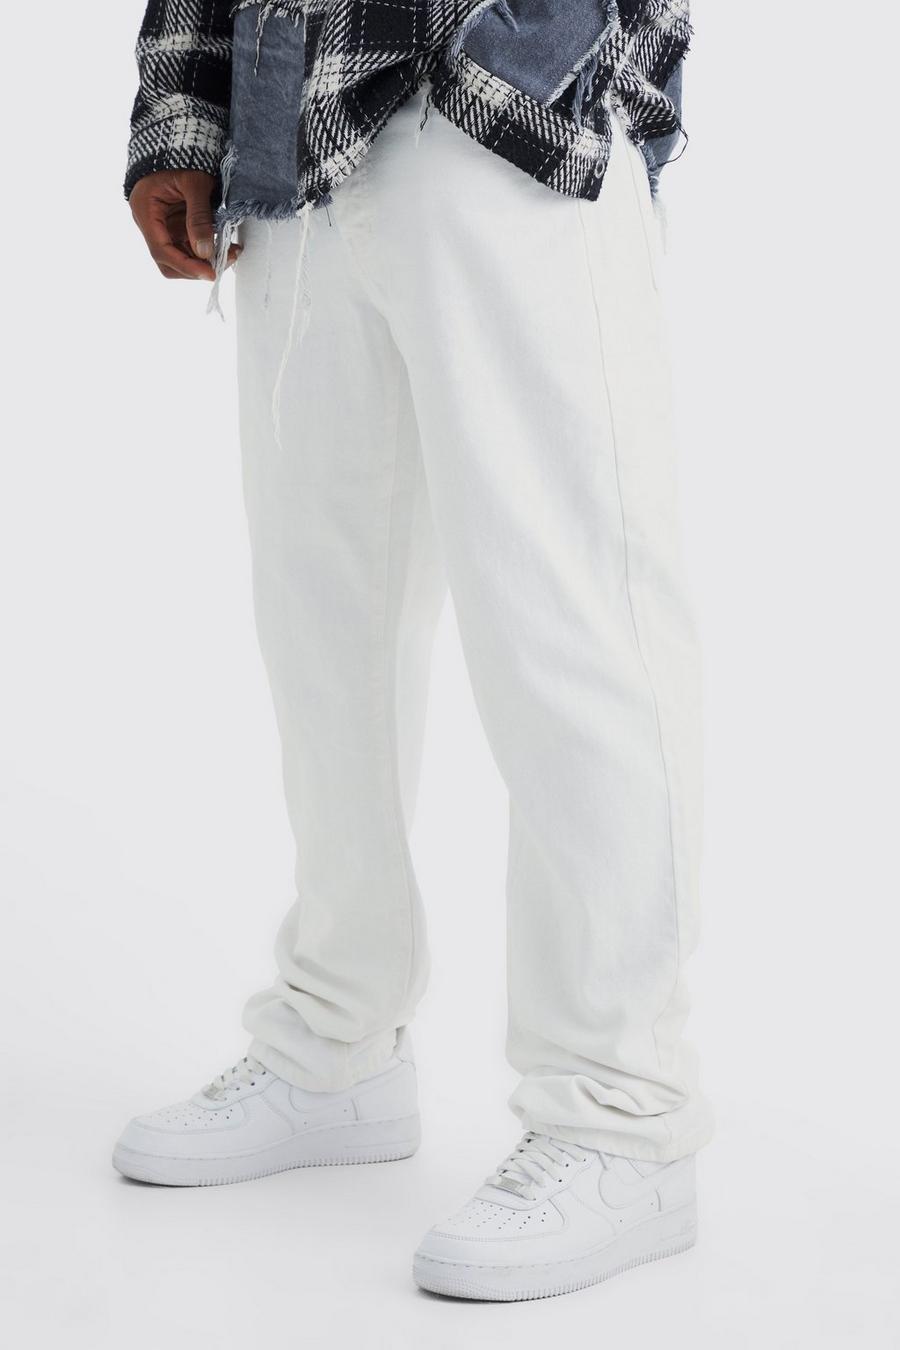 White Jeans i rigid denim med ledig passform